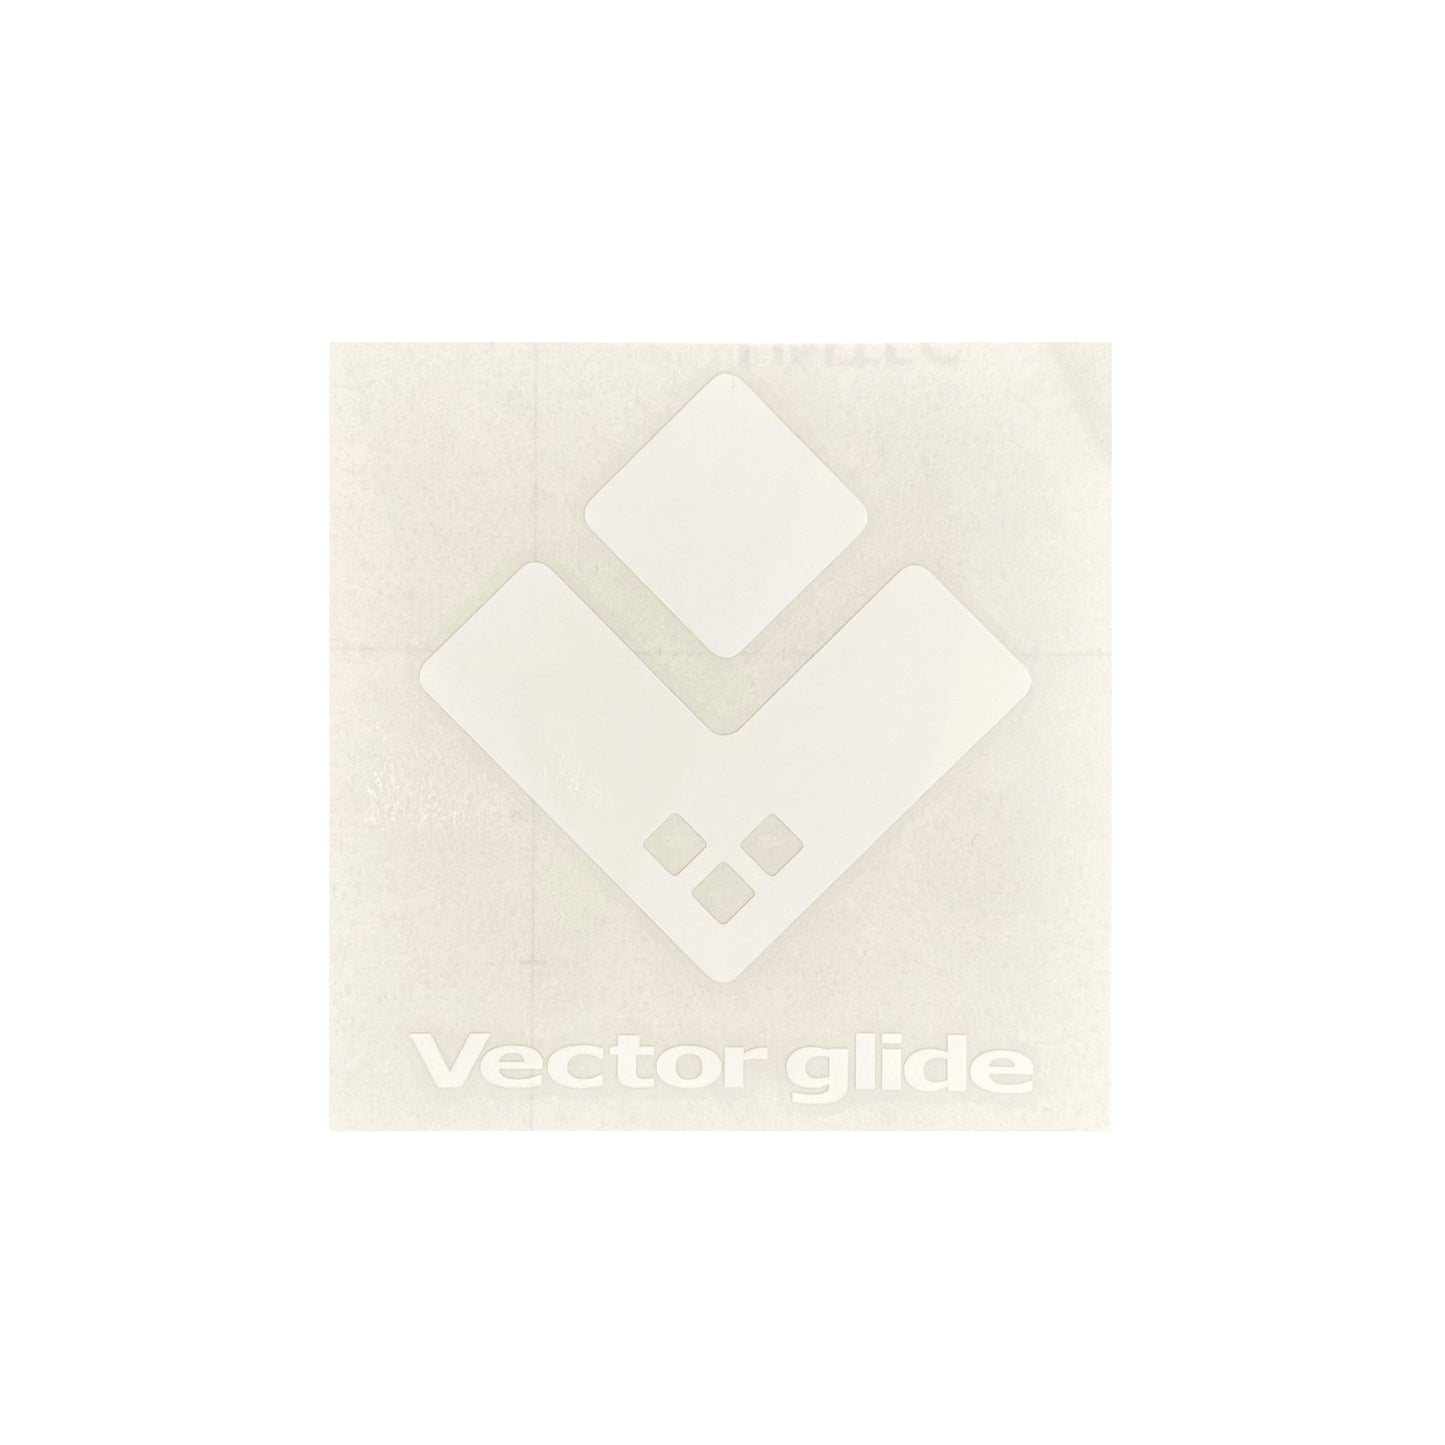 VECTOR GLIDE Logo Cutting sticker【Square】